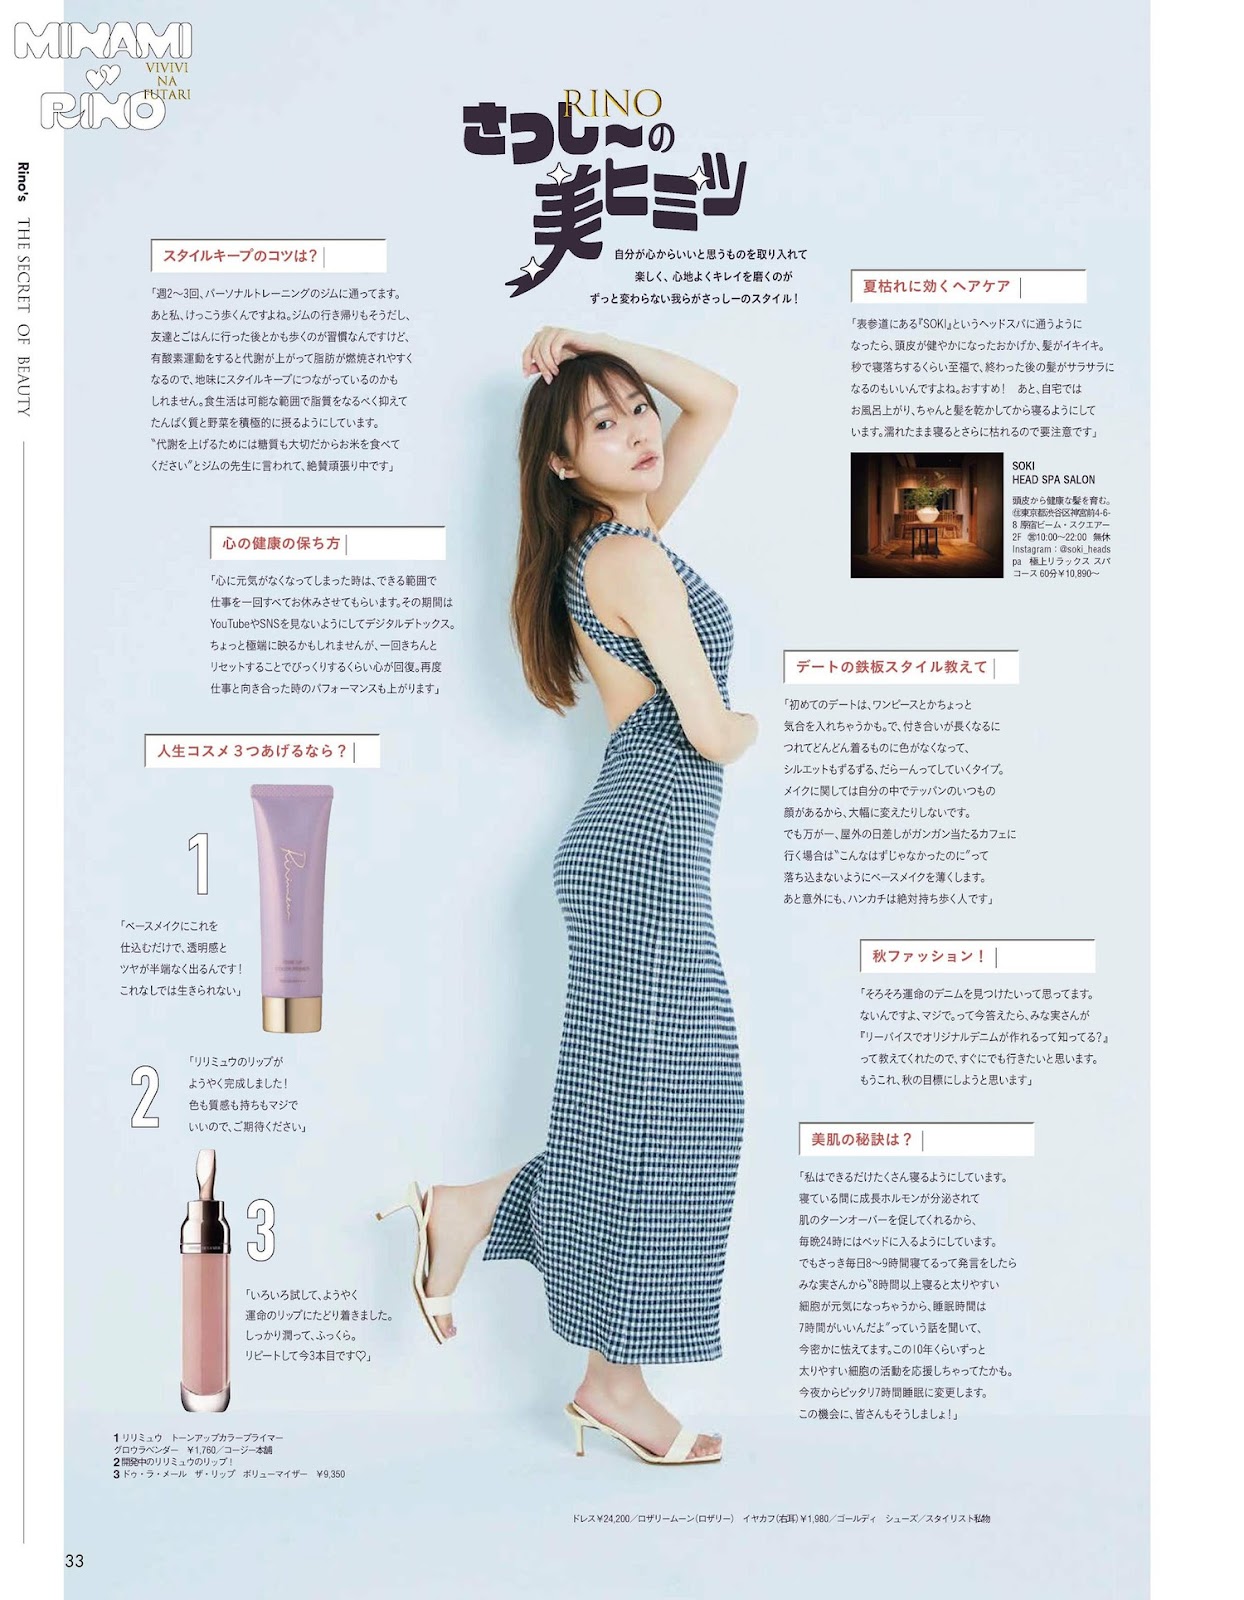 Sashihara Rino 指原莉乃, aR (アール) Magazine 2023.01 img 11